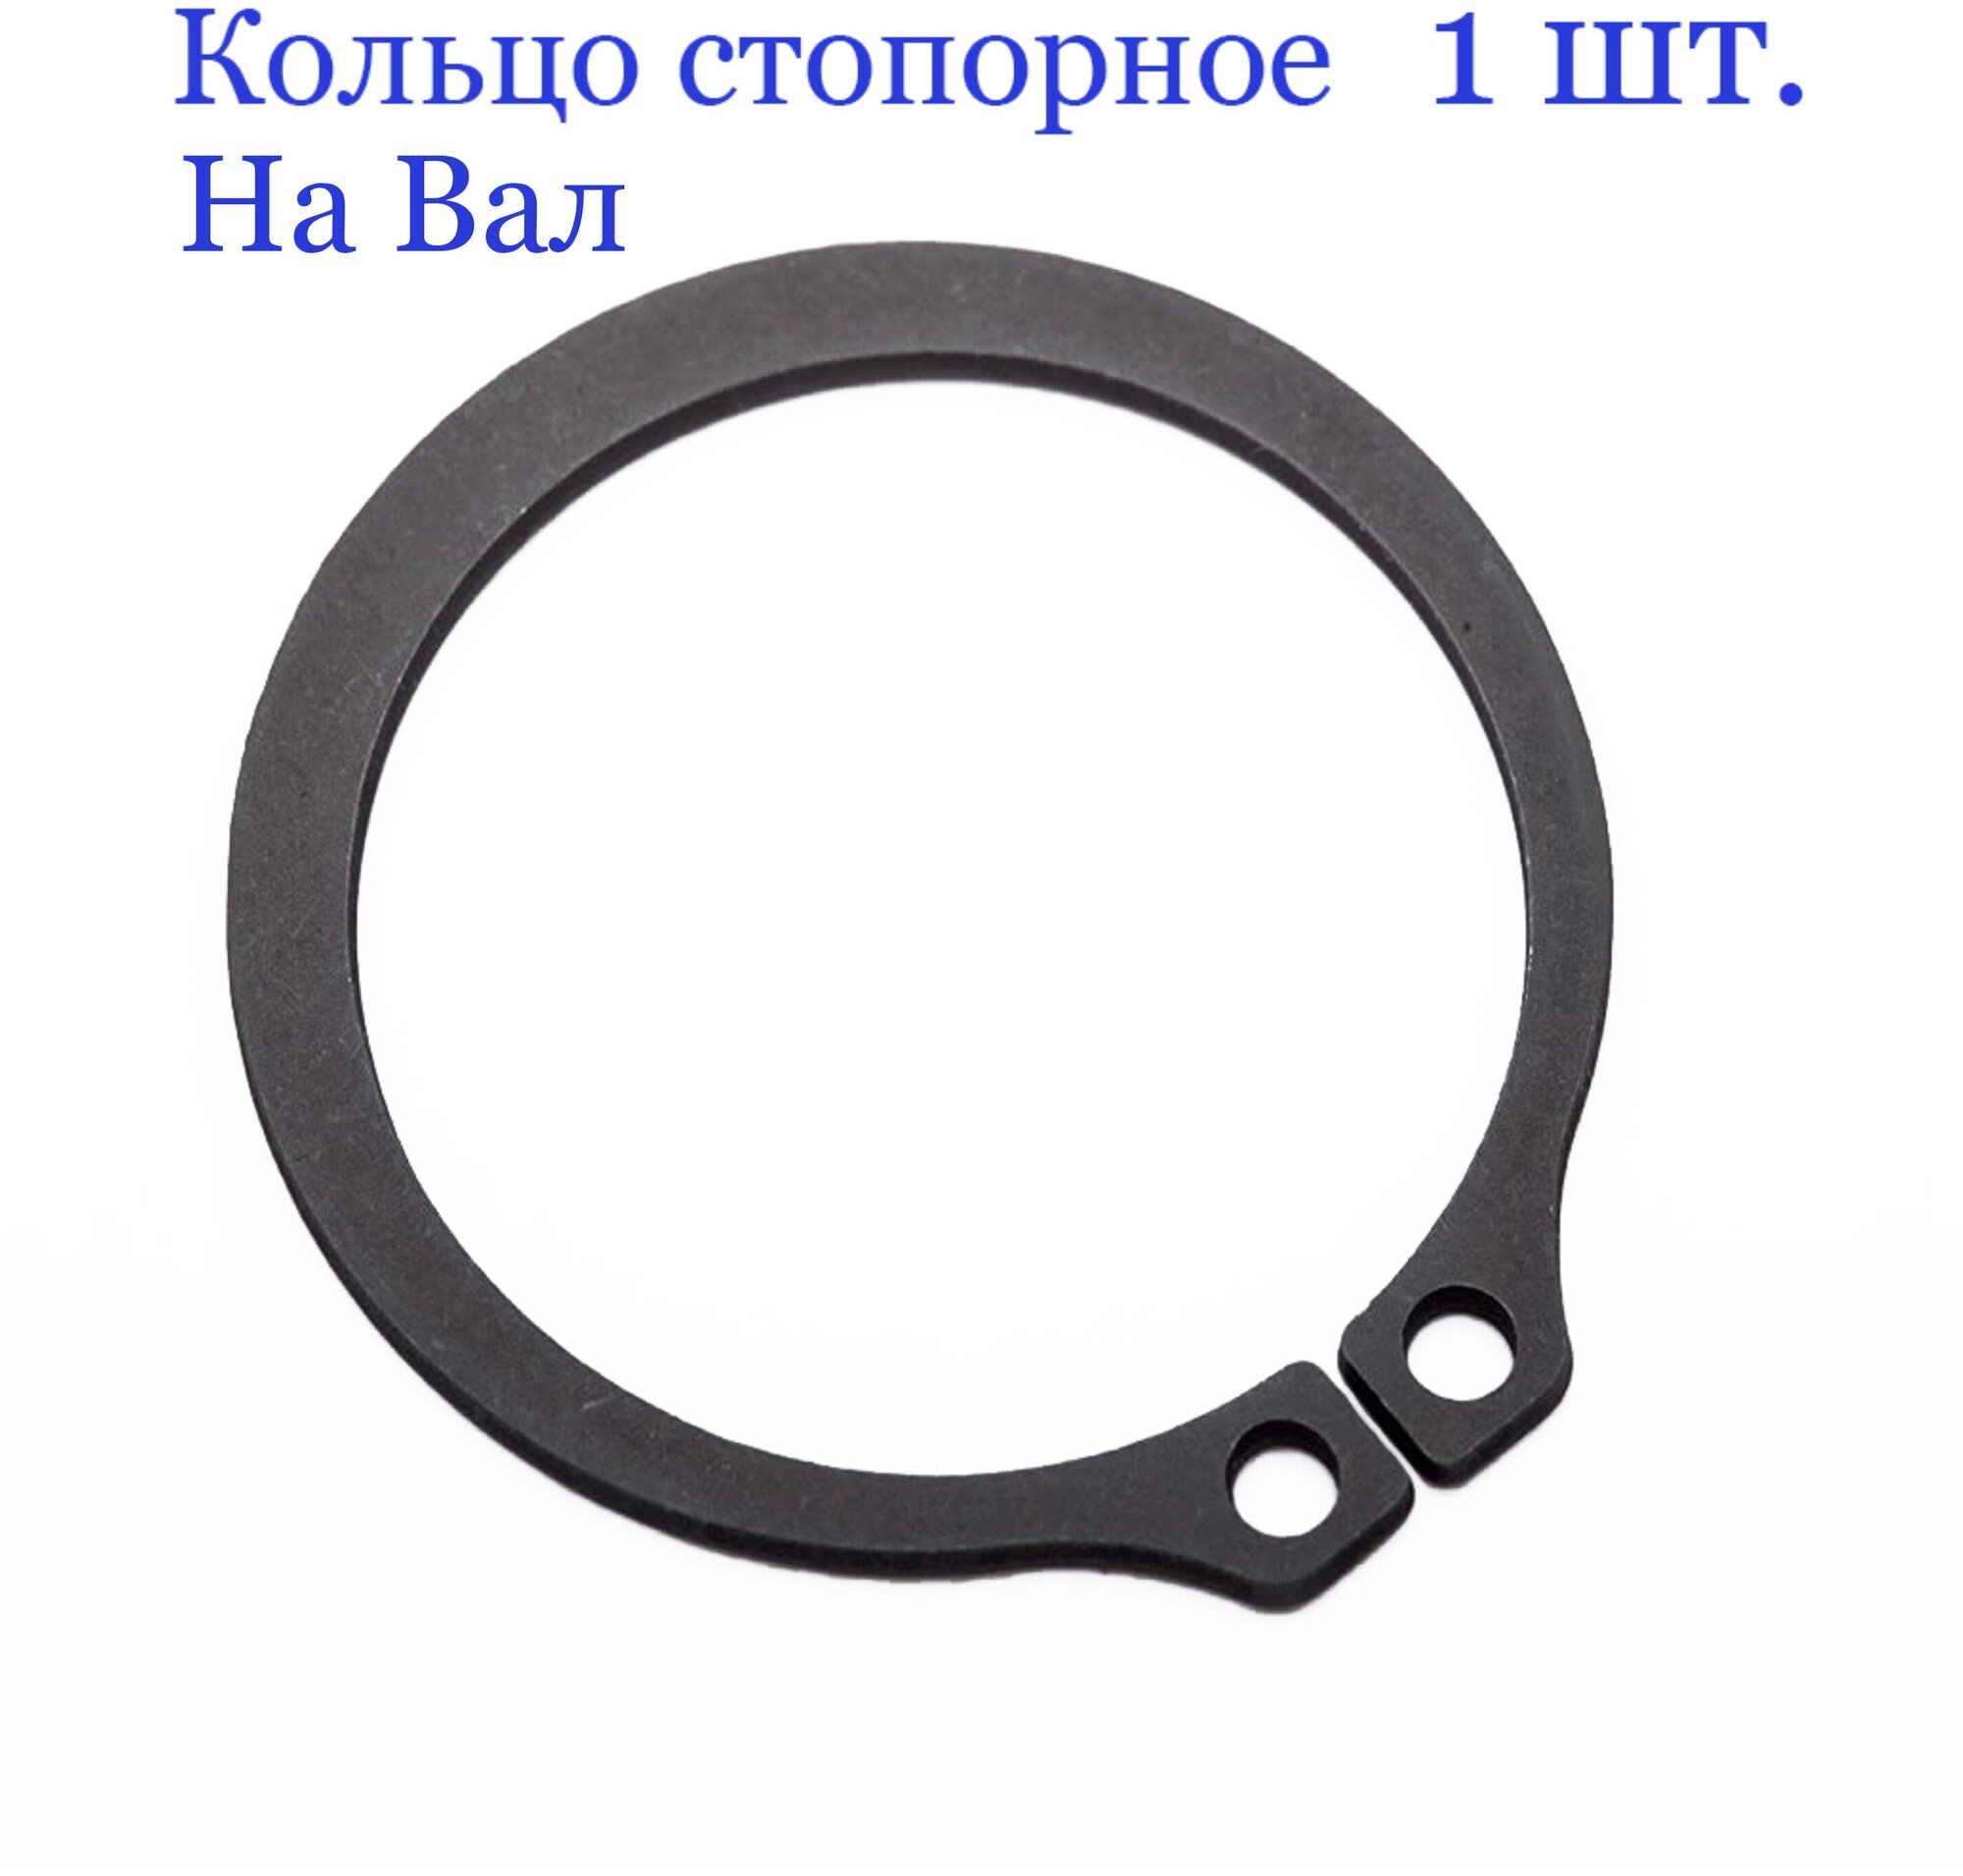 Кольцо стопорное, наружное, на вал 14 мм. х 1 мм, ГОСТ 13942-86 /DIN 471 (1 шт.)